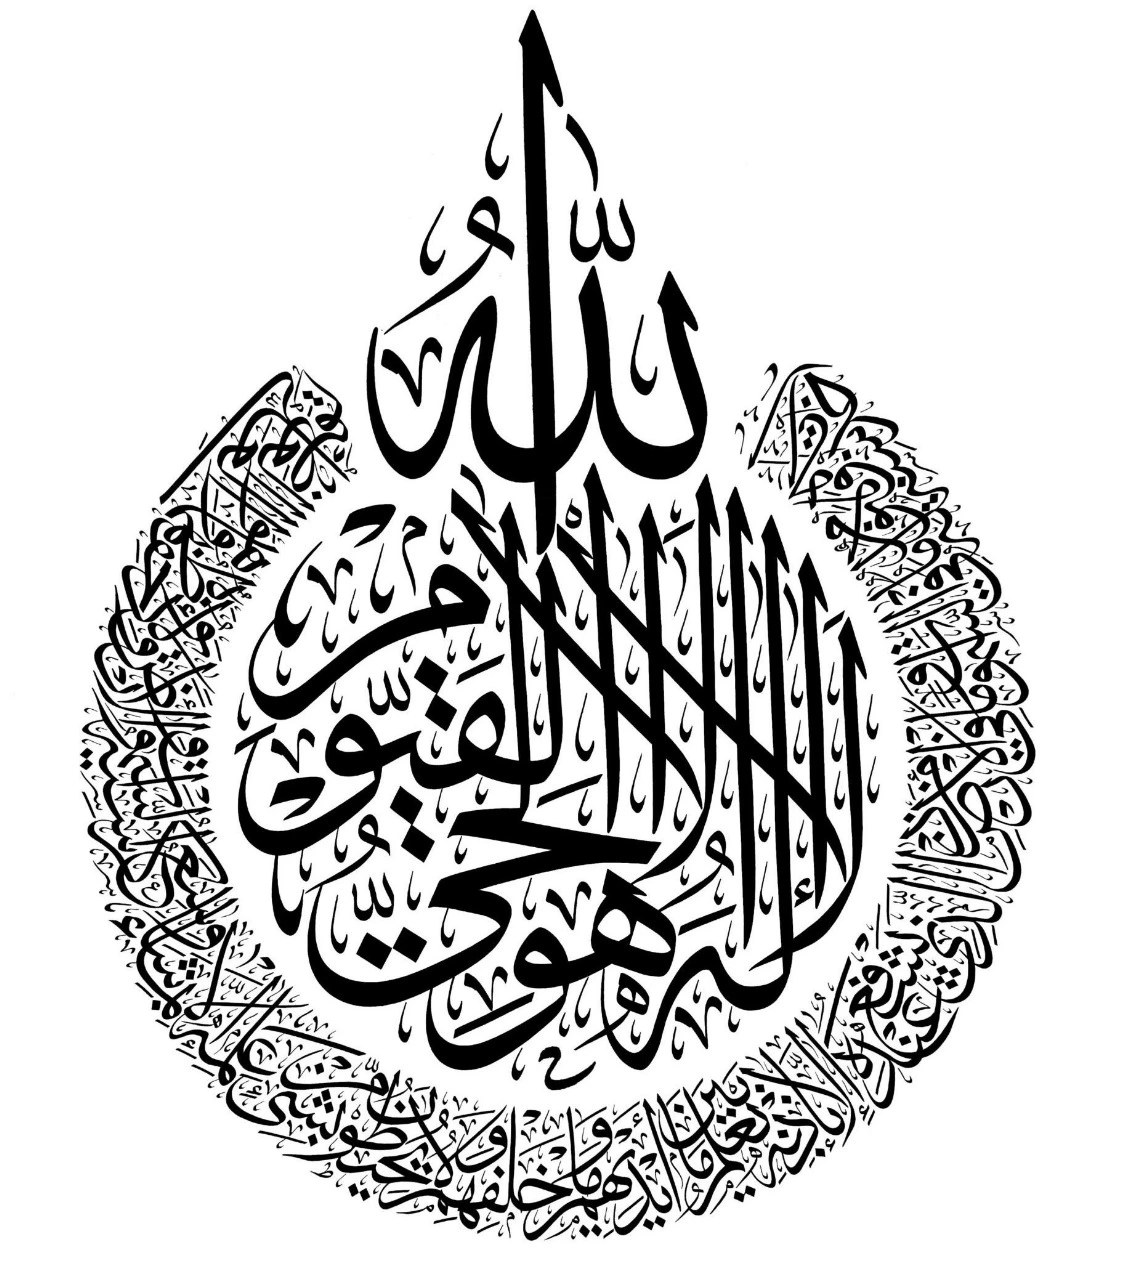 Ayat ul Kursi – And its Benefits